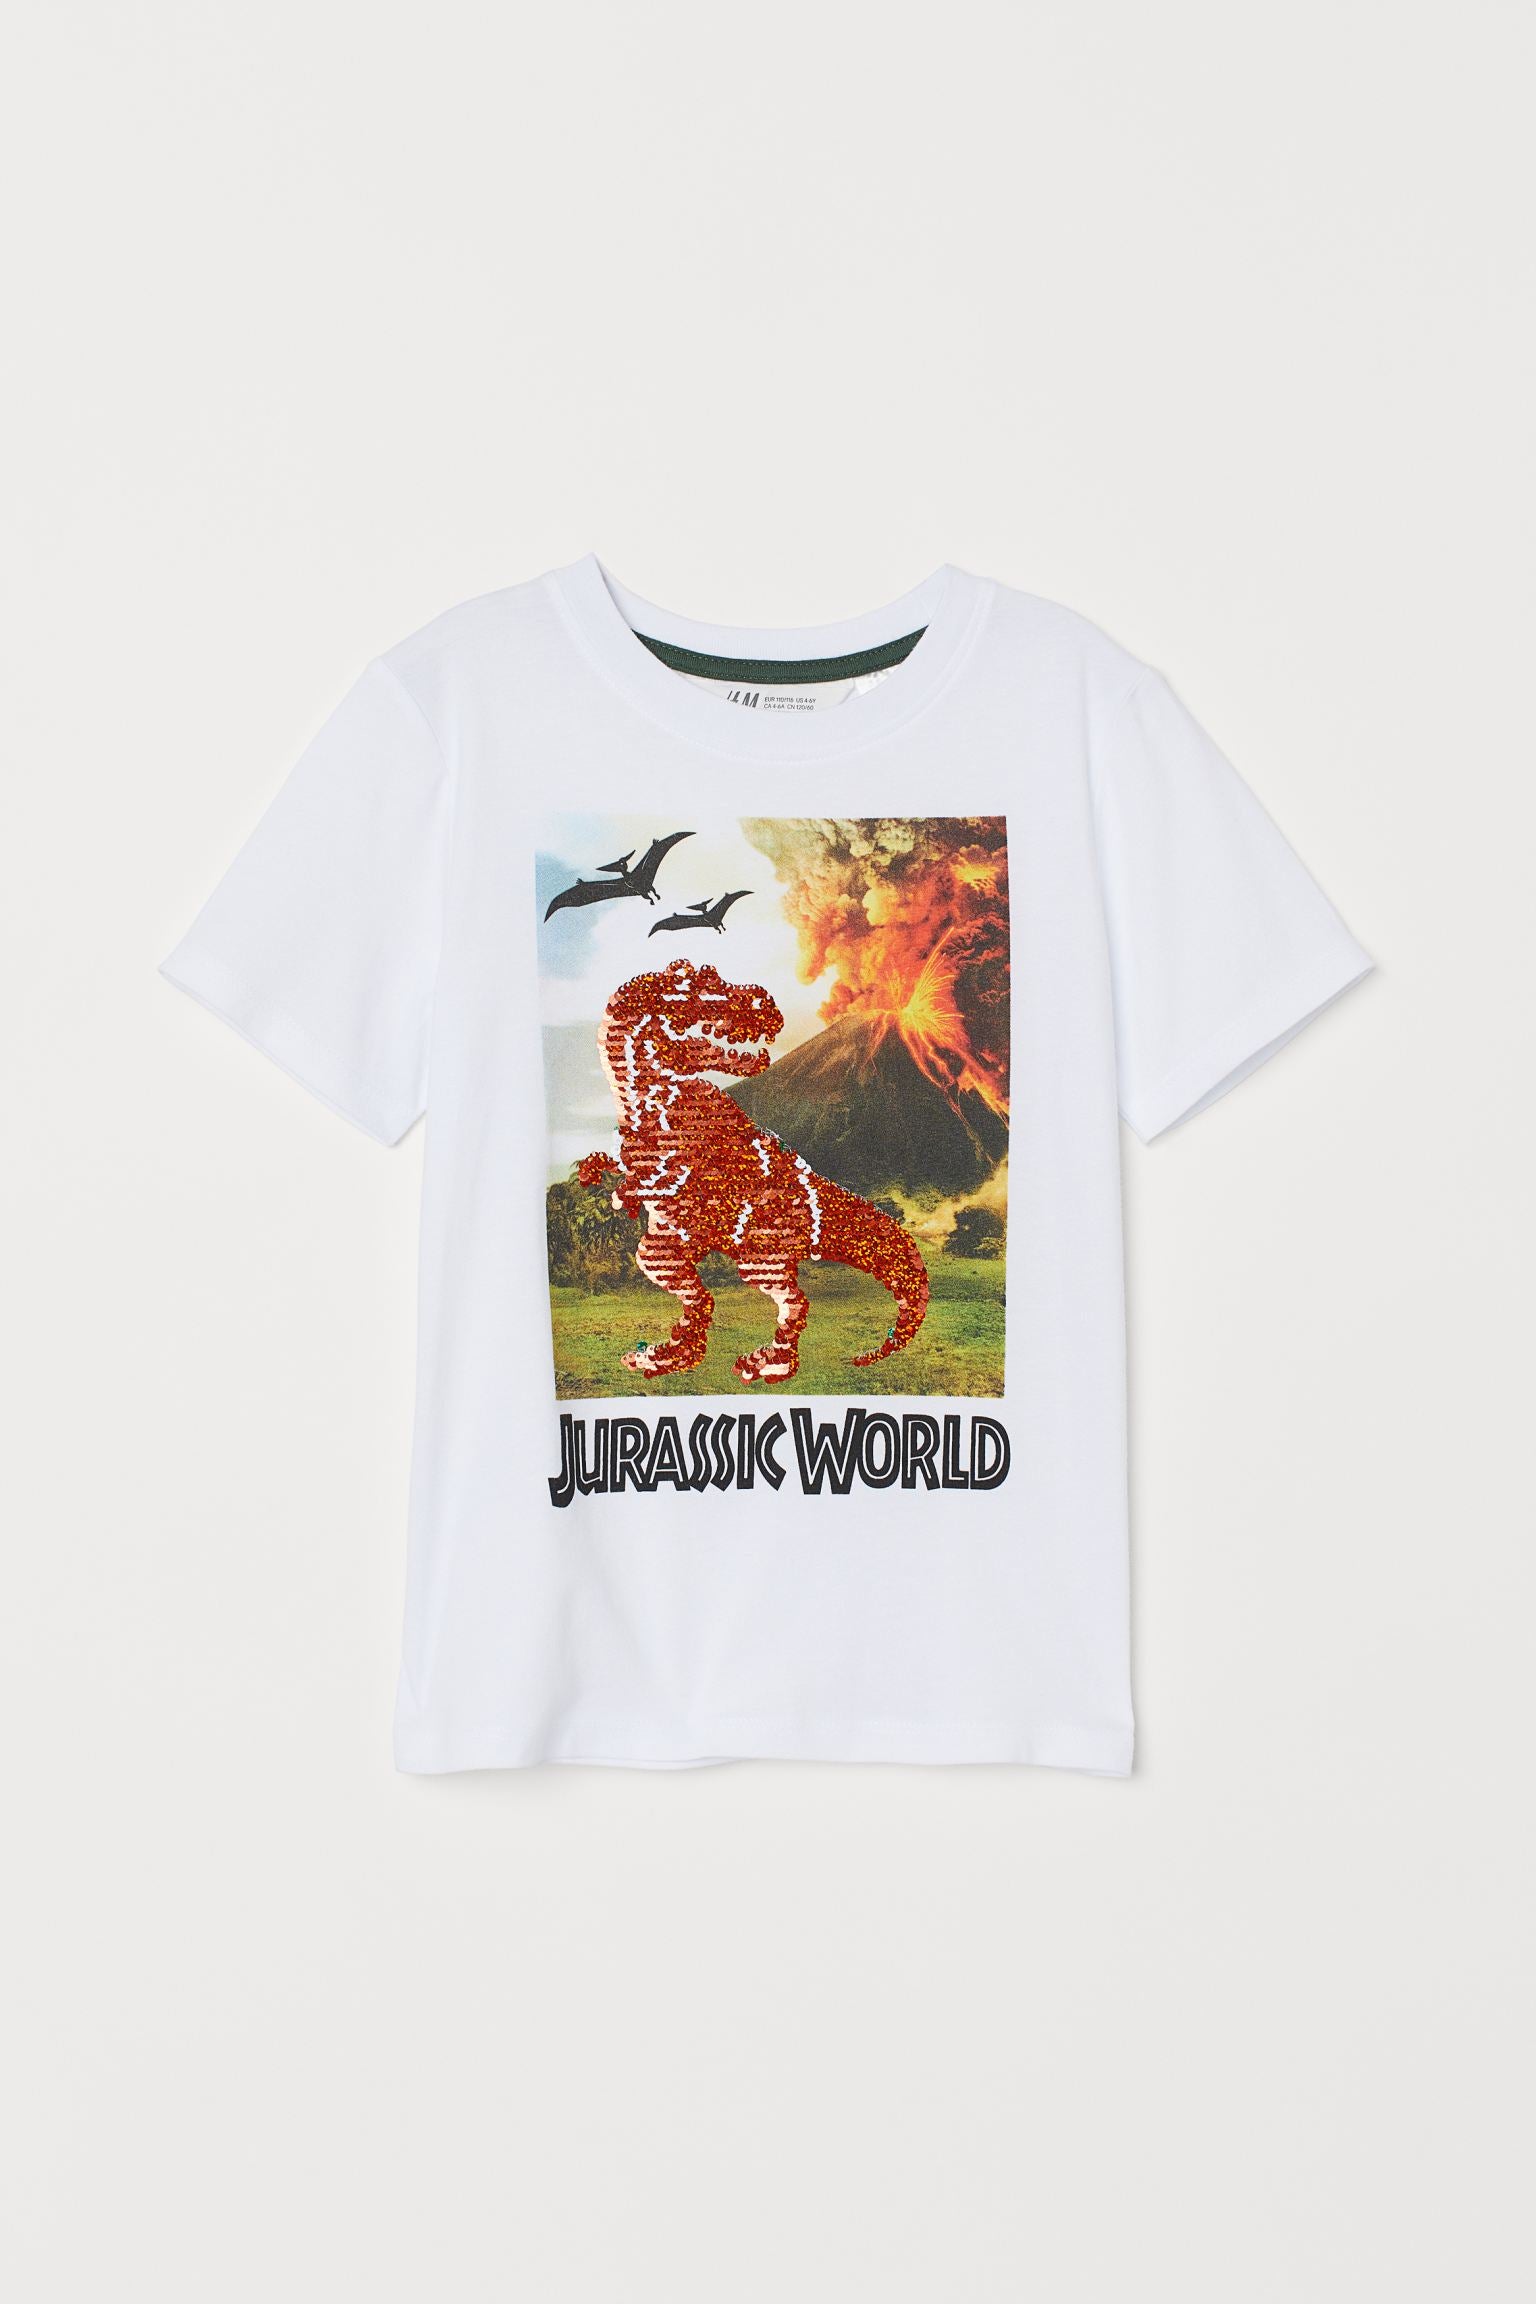 Flip-sequin T-shirt-Jurassic World - THEKIDSKREW